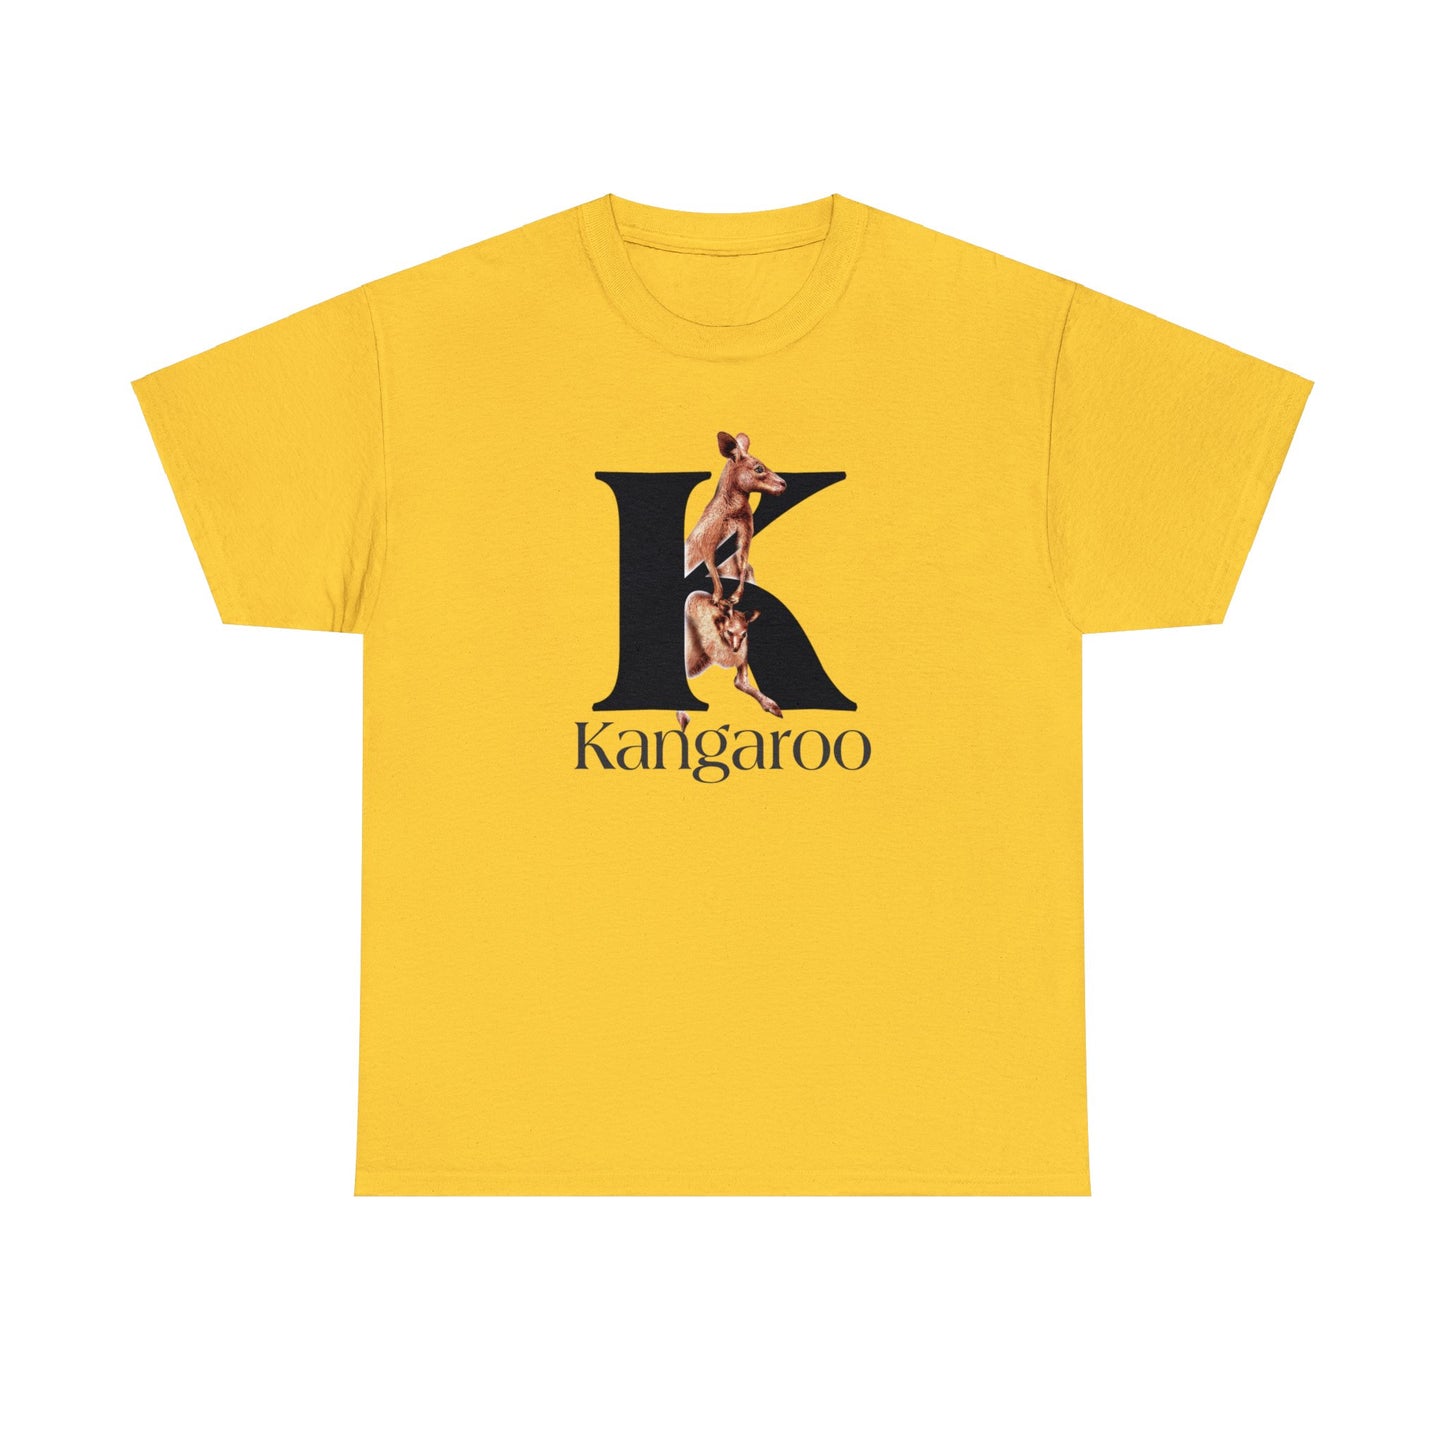 K is for Kangaroo, Kangaroo Mom and Joey shirt, Illustrated Drawing T-Shirt, animal